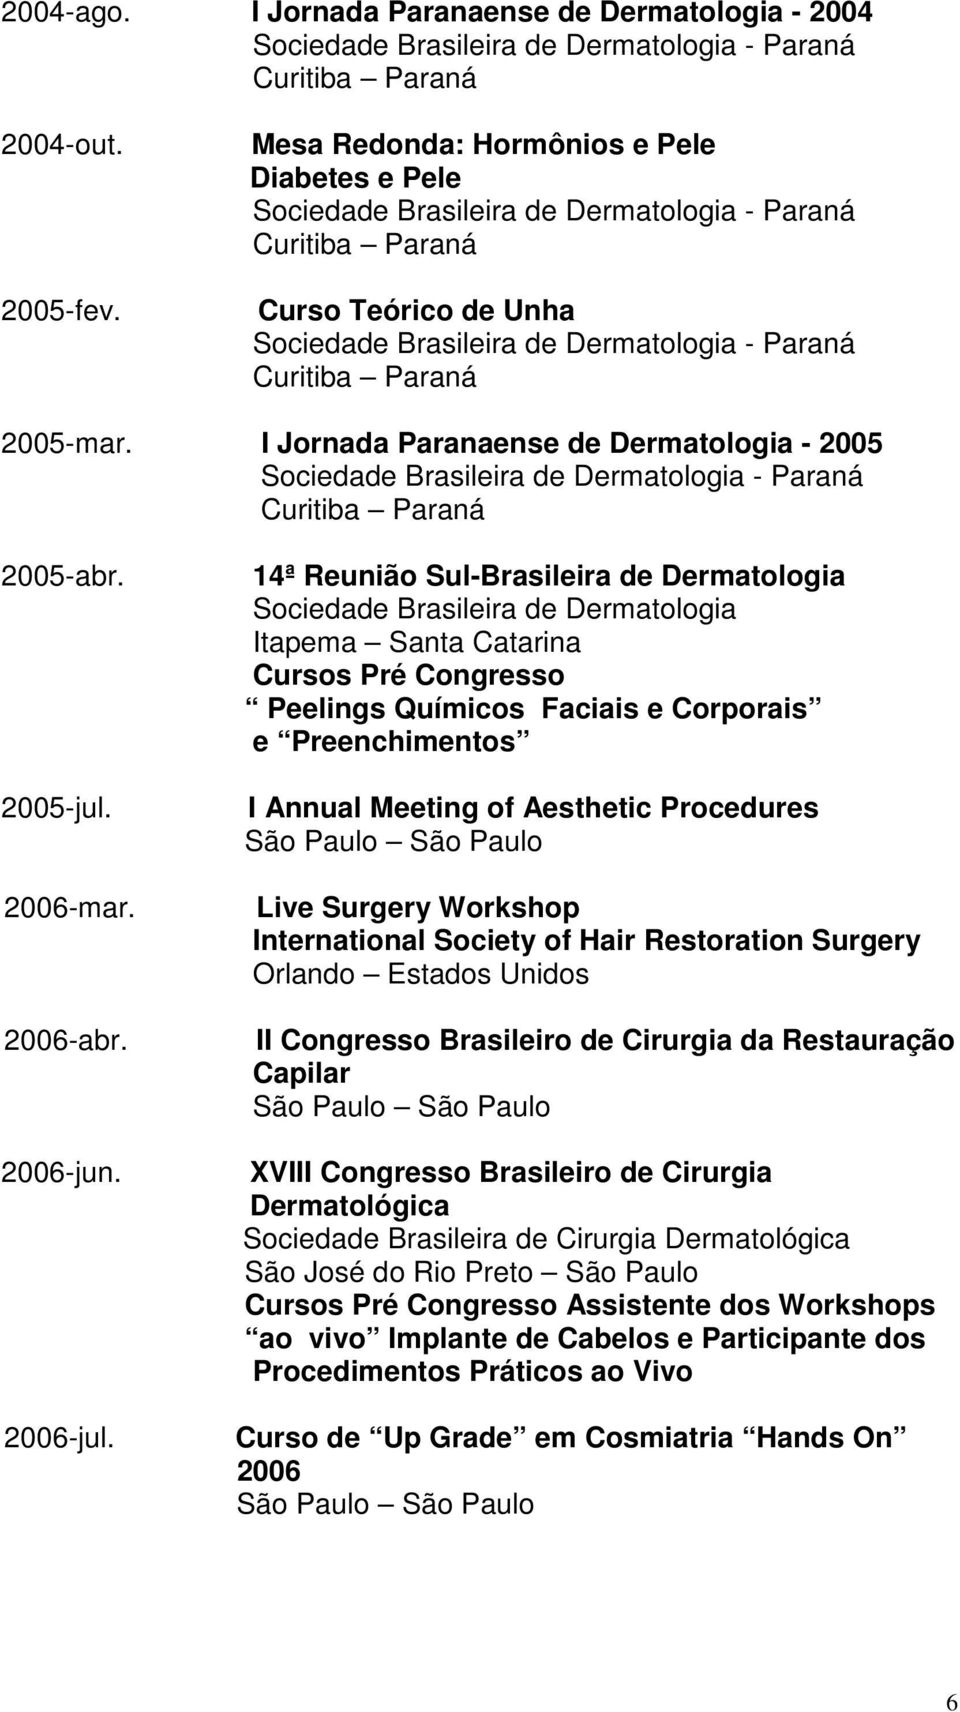 14ª Reunião Sul-Brasileira de Dermatologia Itapema Santa Catarina Cursos Pré Congresso Peelings Químicos Faciais e Corporais e Preenchimentos I Annual Meeting of Aesthetic Procedures Live Surgery